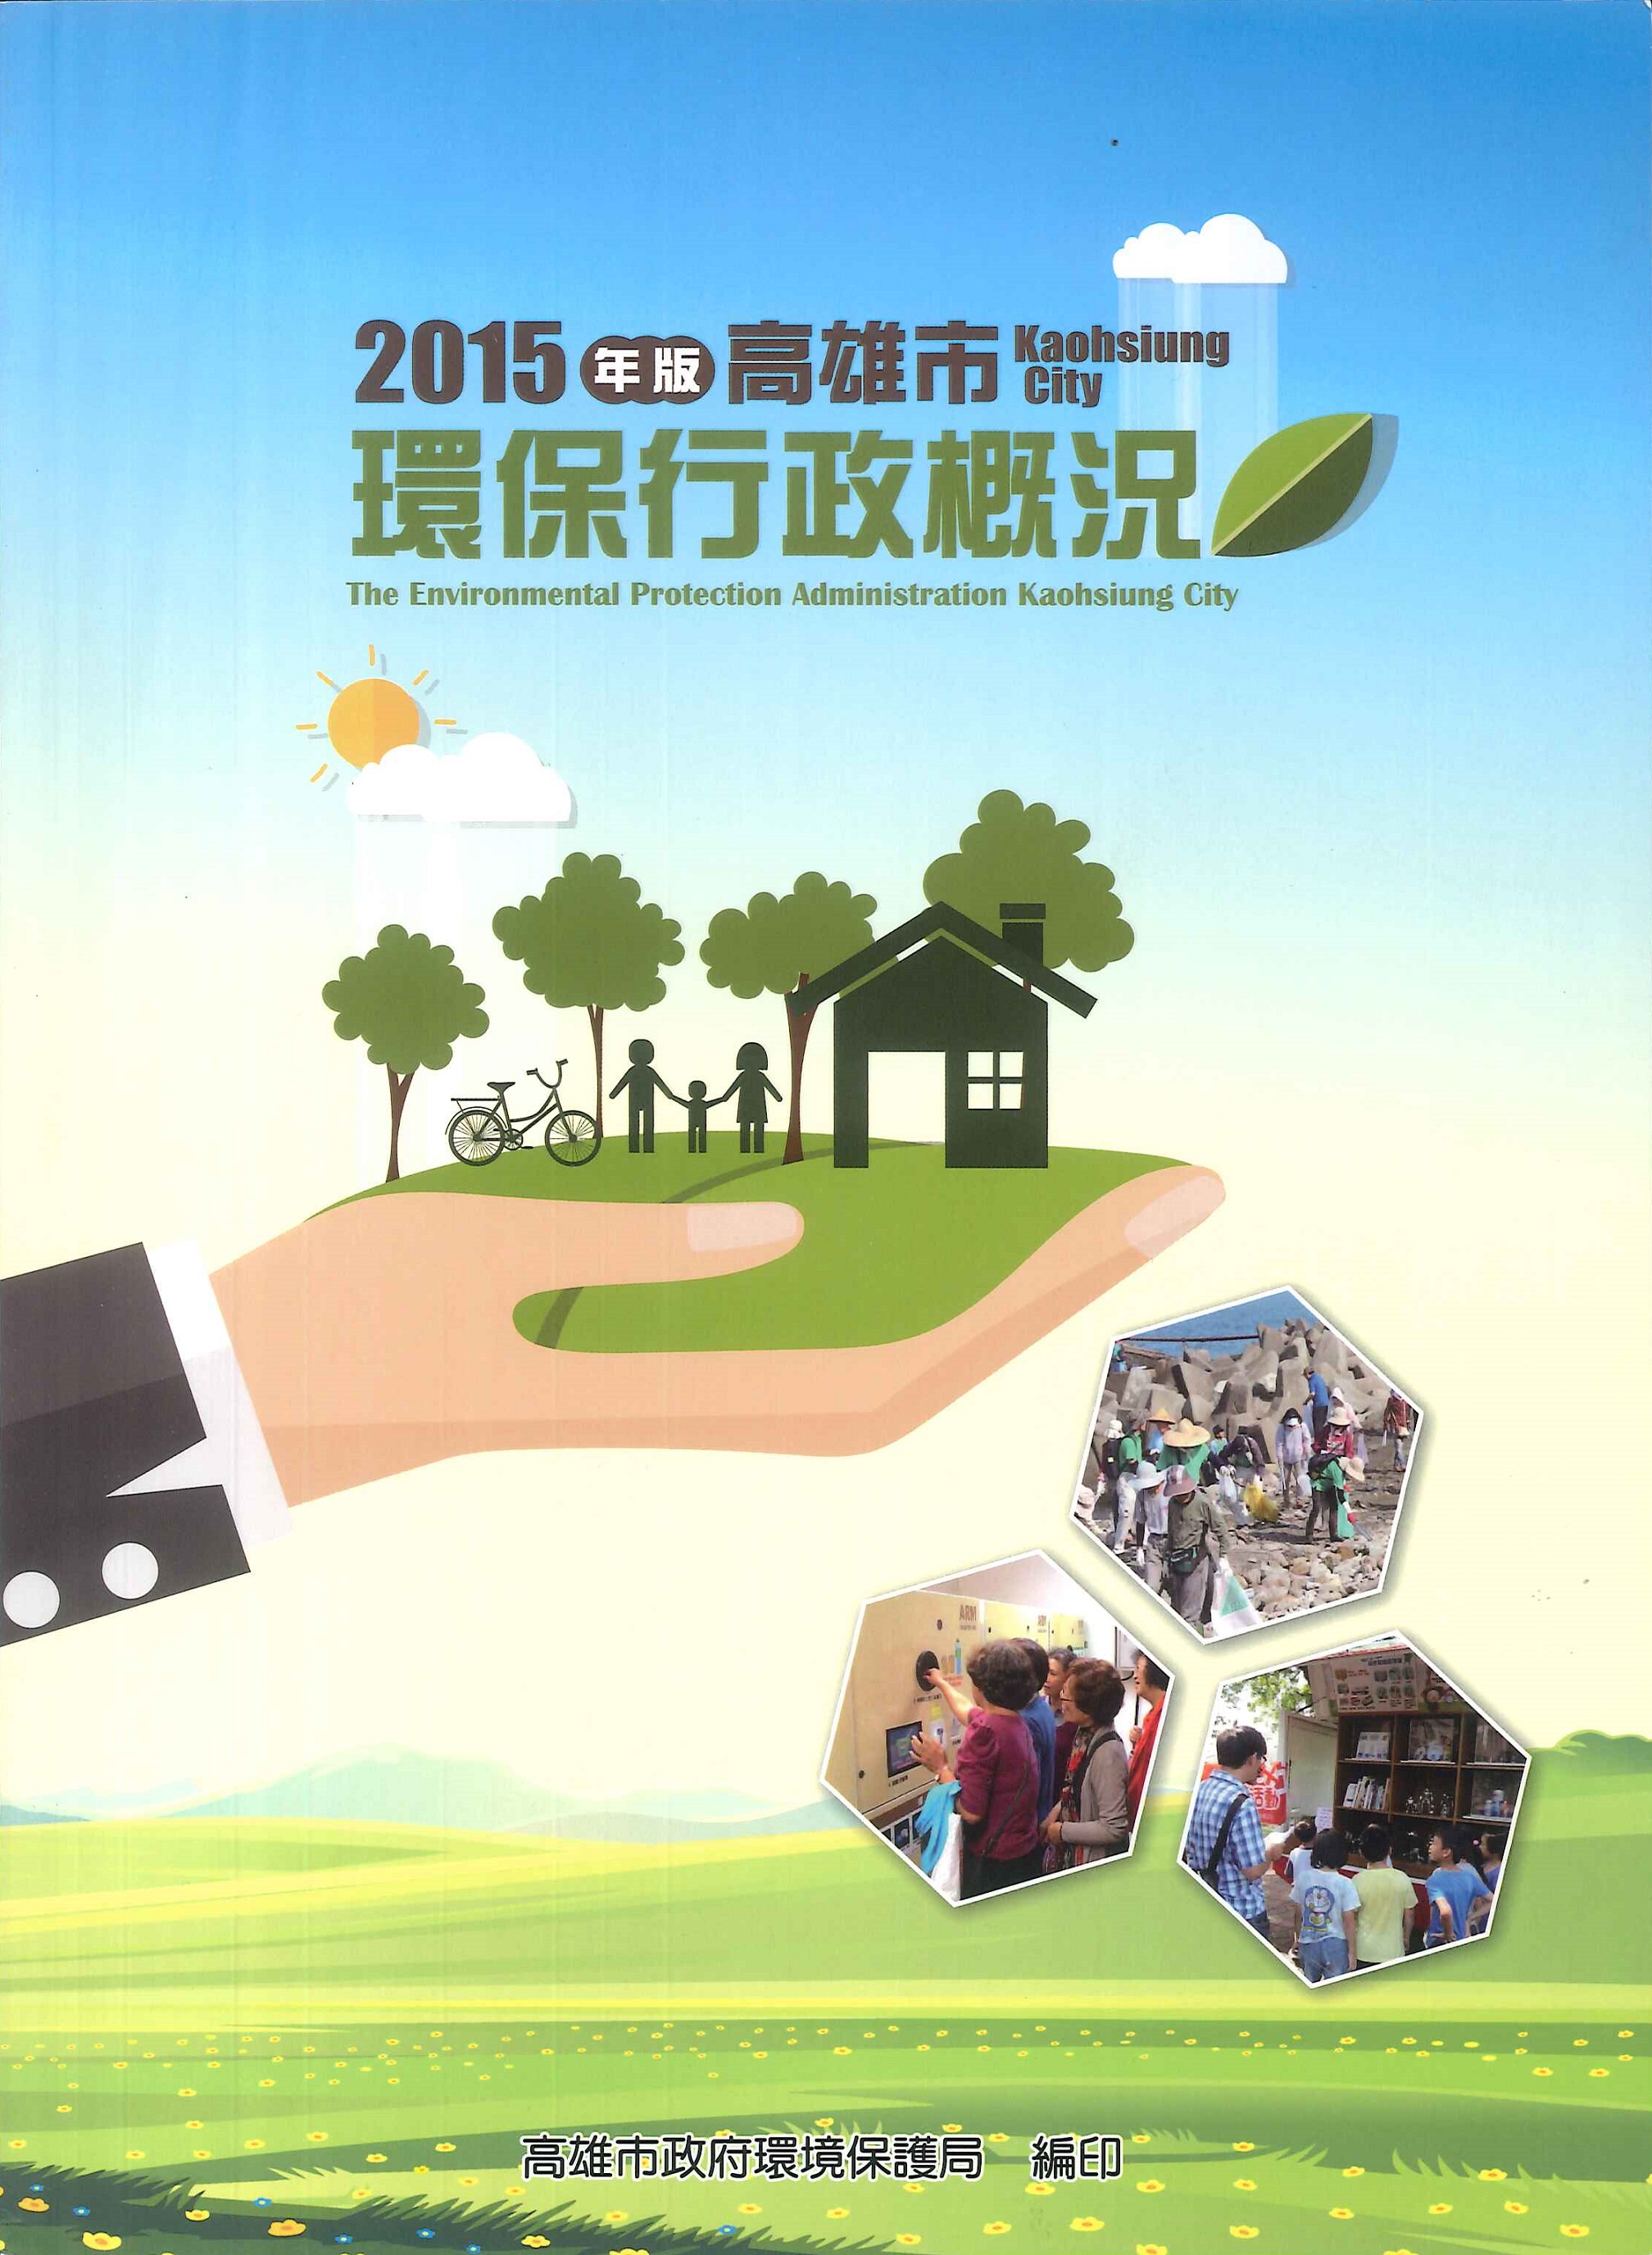 高雄市環保行政概況=The environmental protection abstract of Kaohsiung City